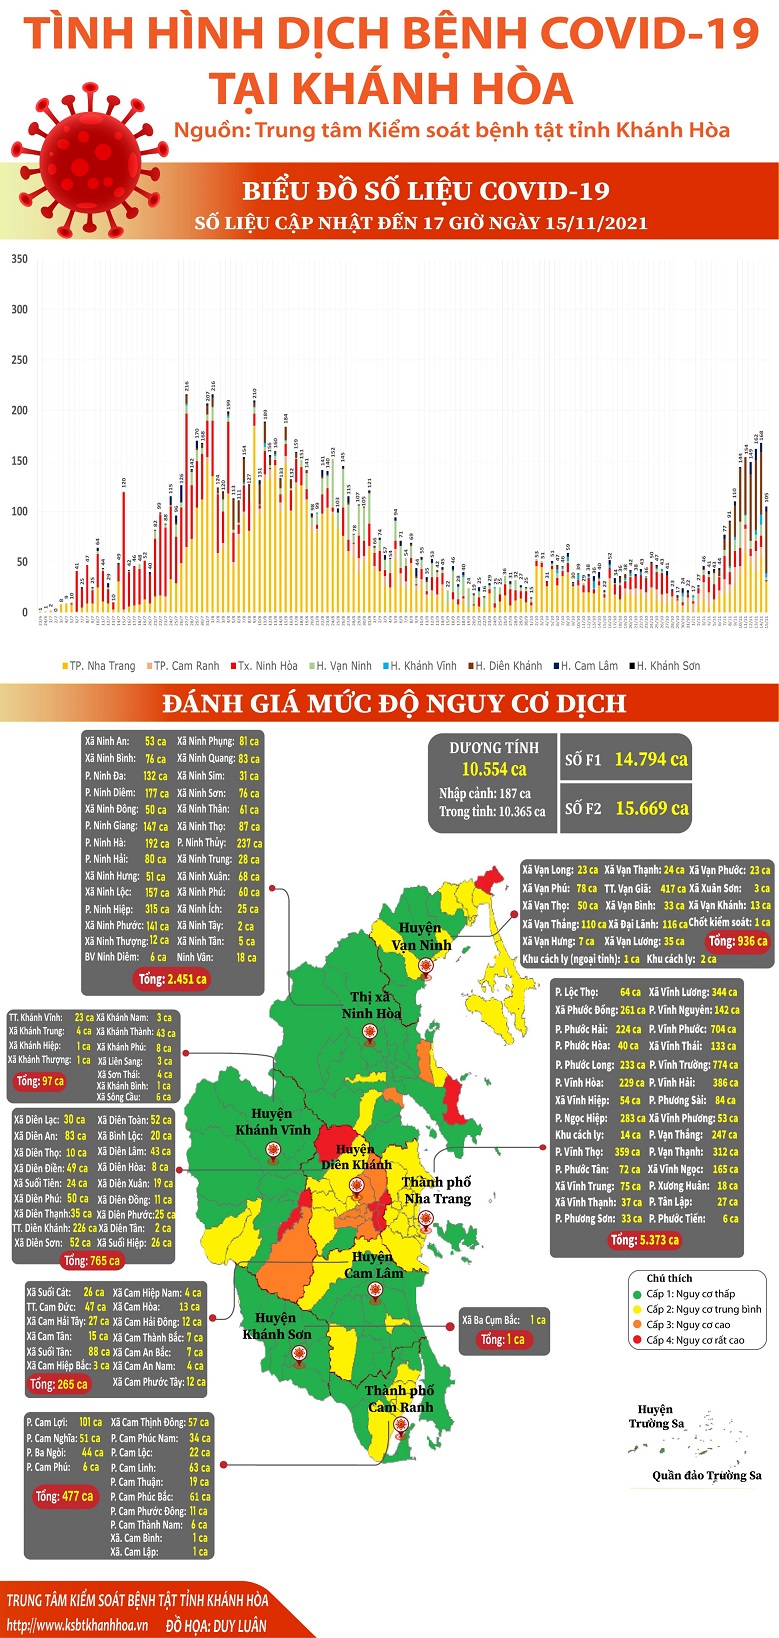 Biểu đồ tình hình dịch bệnh COVID-19 tại Khánh Hòa (Cập nhật đến 17h00 ngày 15/11/2021)